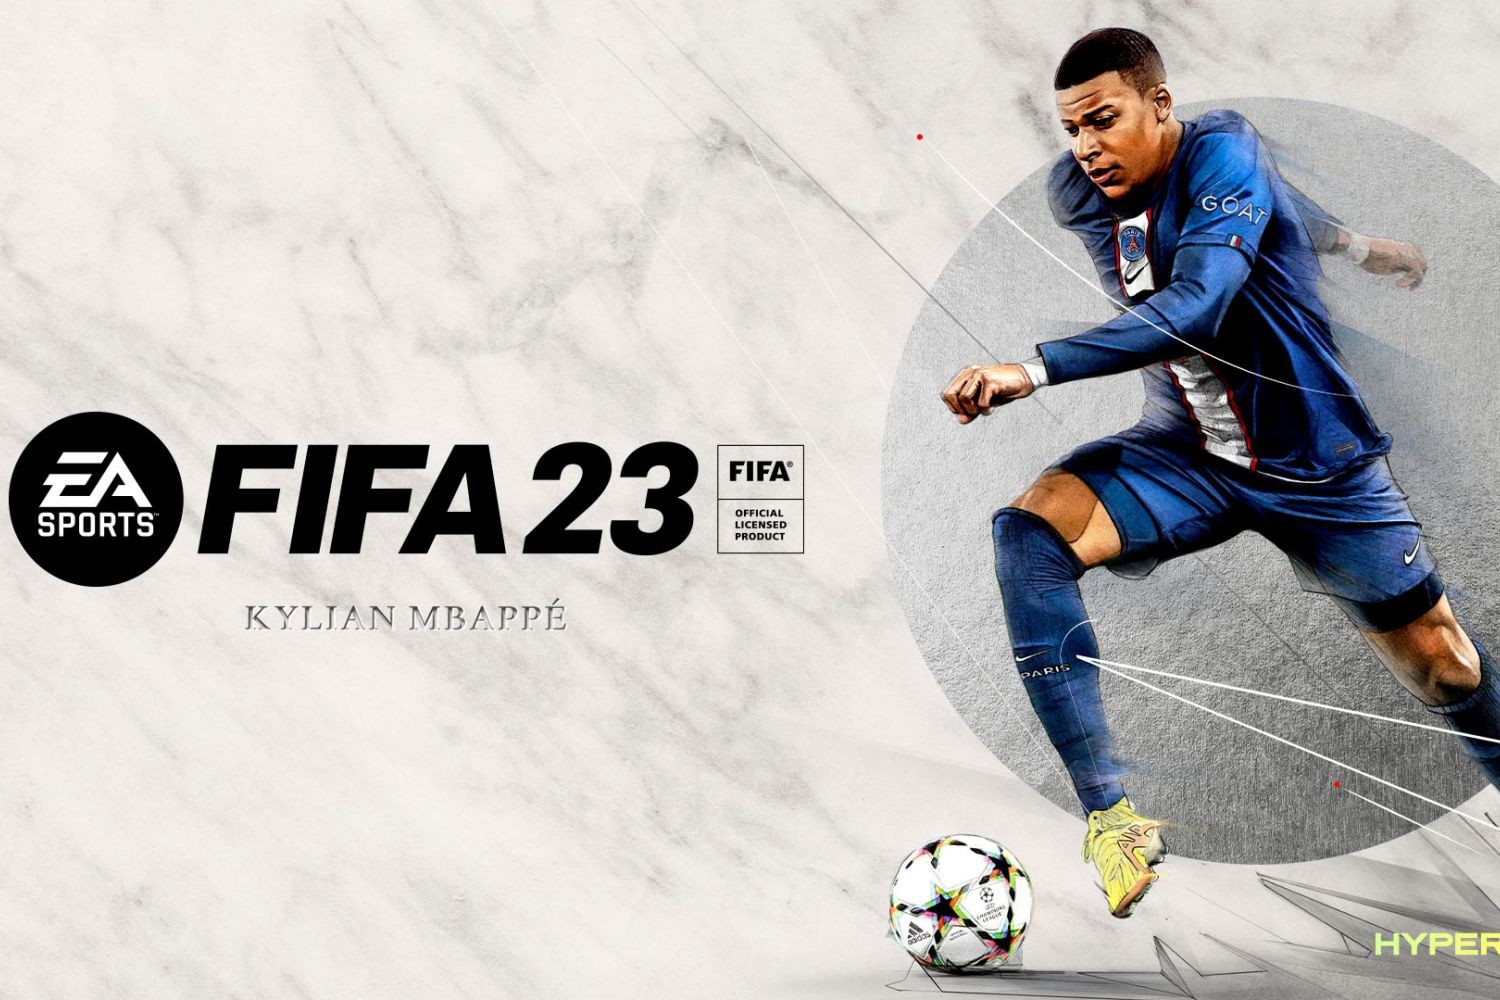 FIFA 23: Gra z poważnymi problemami. Użytkownicy bombardują produkcję negatywnymi ocenami